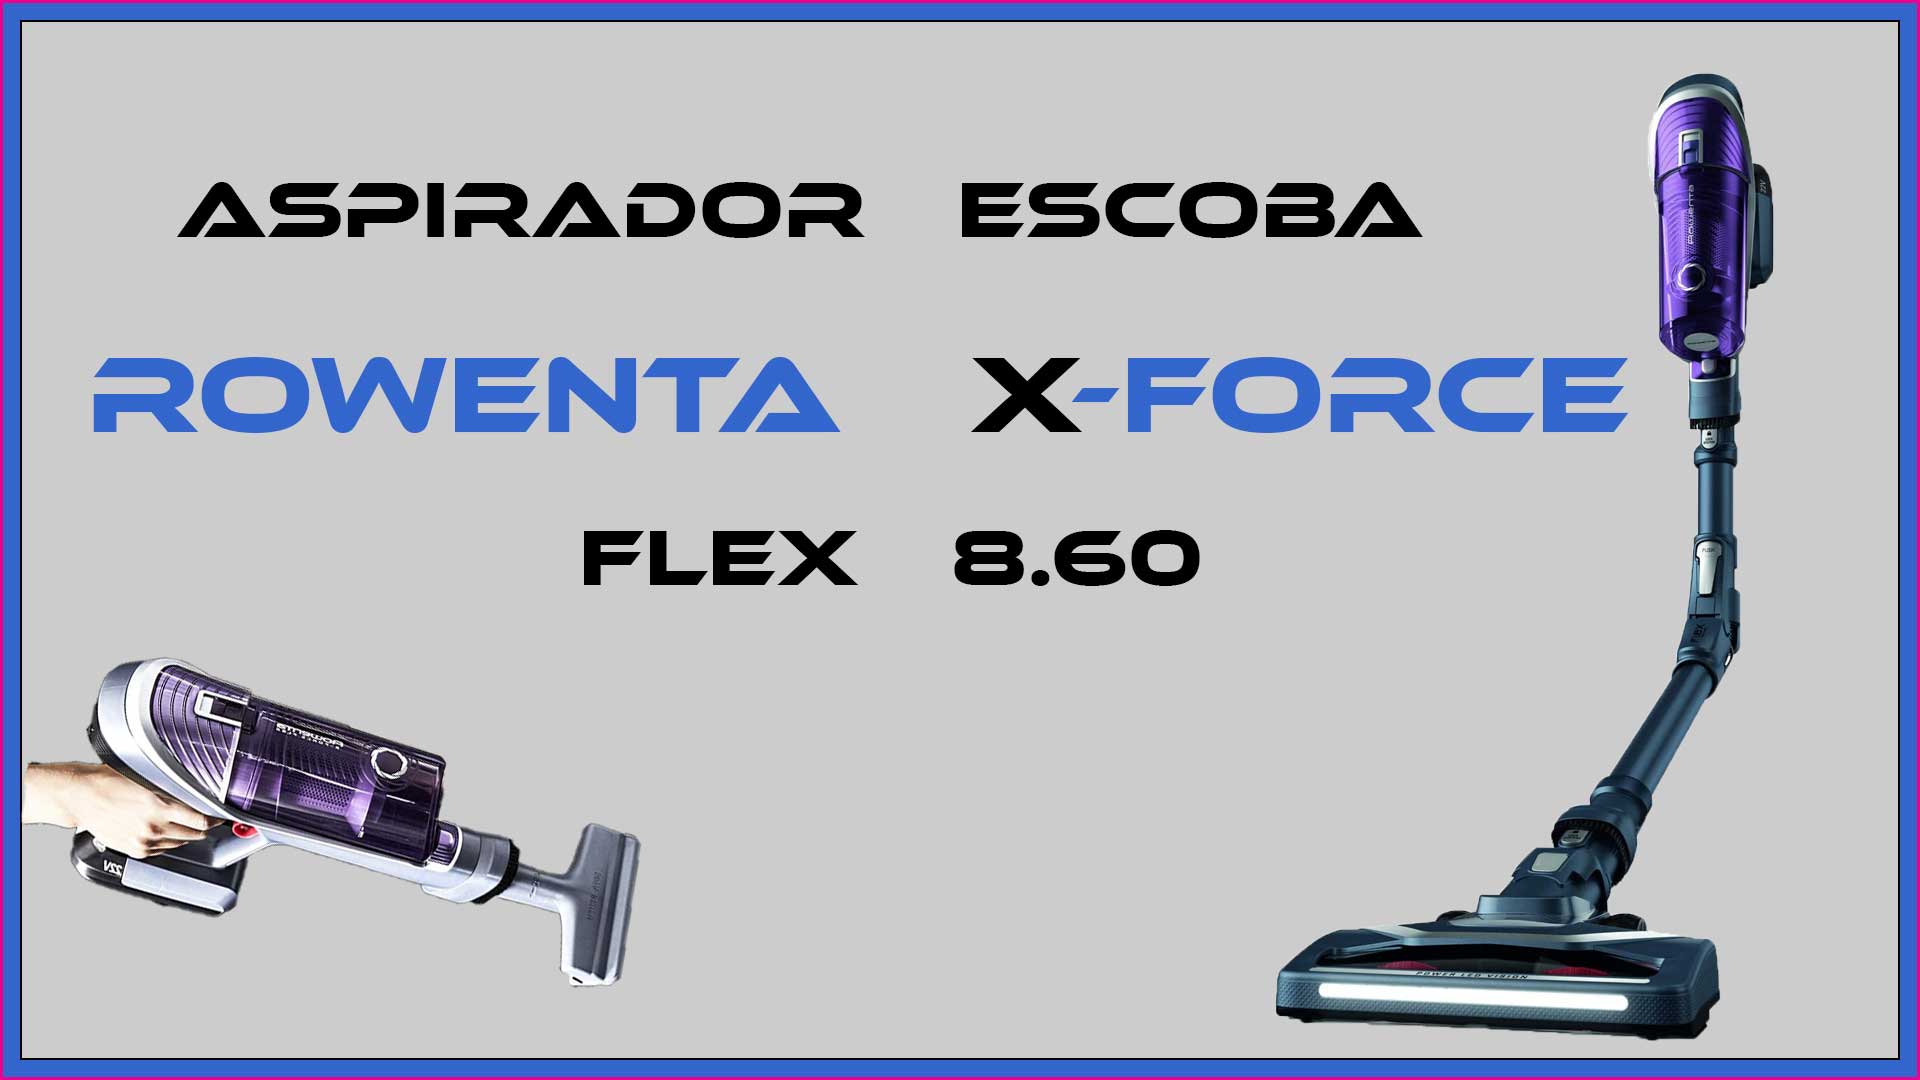 Imagen princiapal del artículo sobre el aspirador escoba Rowenta XForce Flex 8.60. Rowenta X-Force.